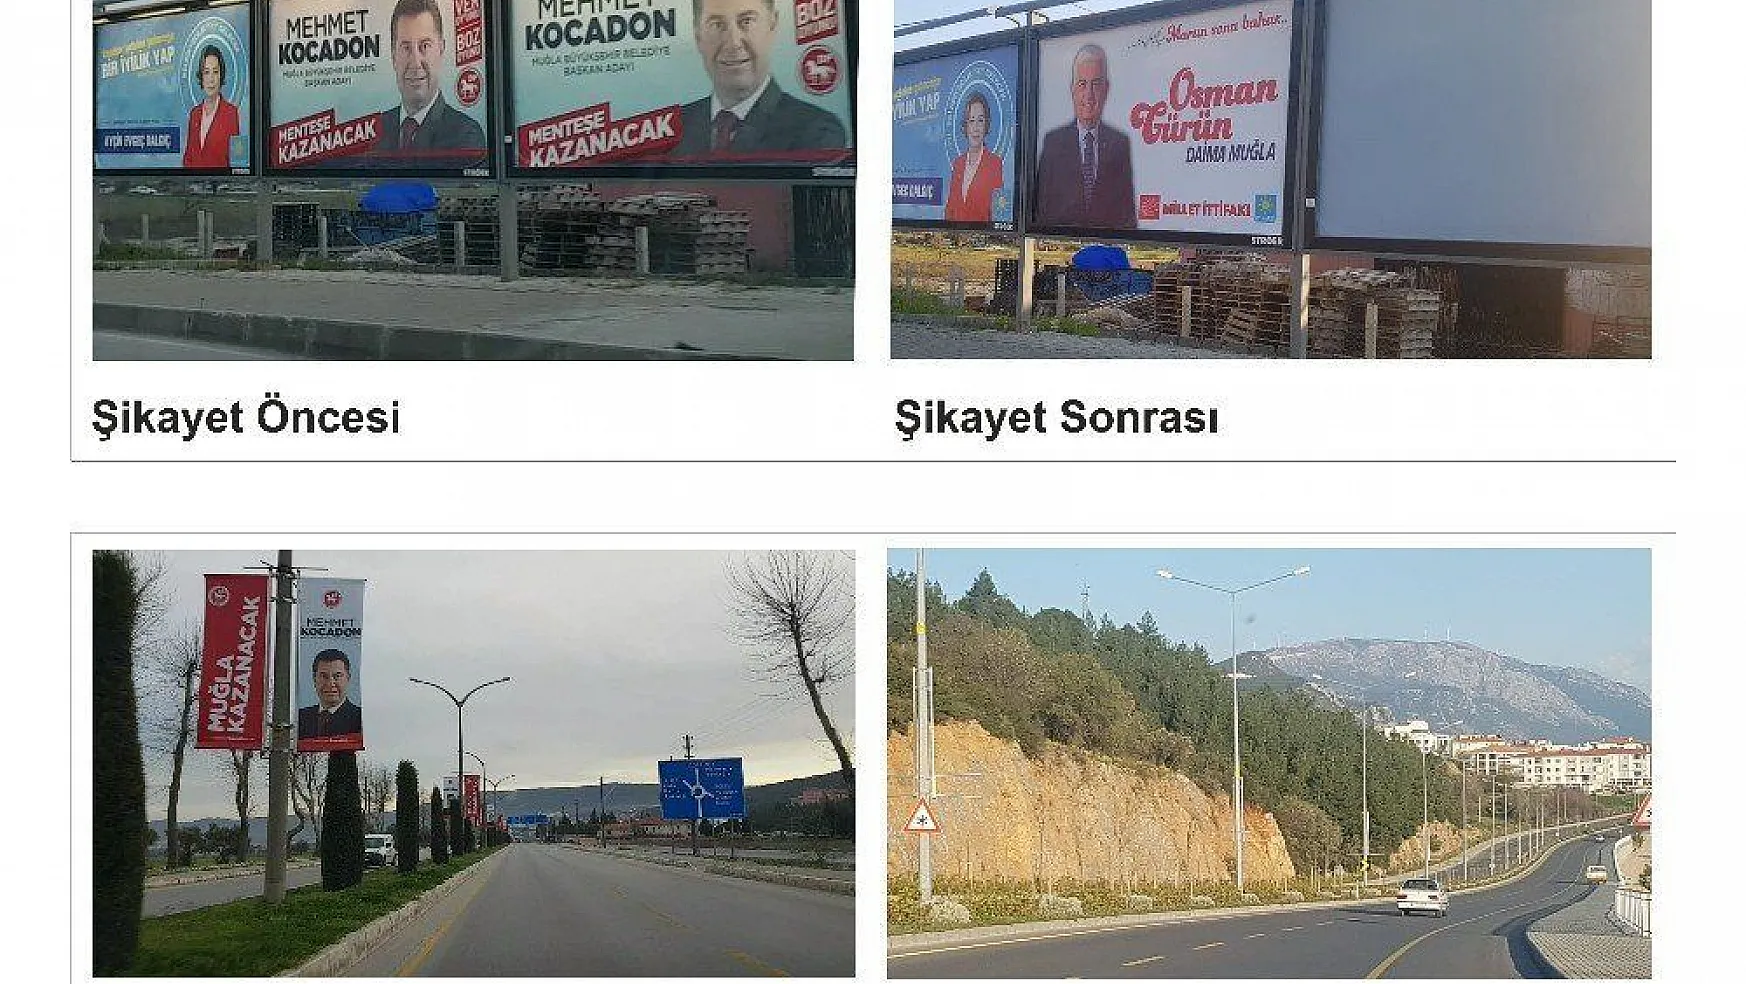 Kocadon'un billboardları ve posterleri kaldırıldı